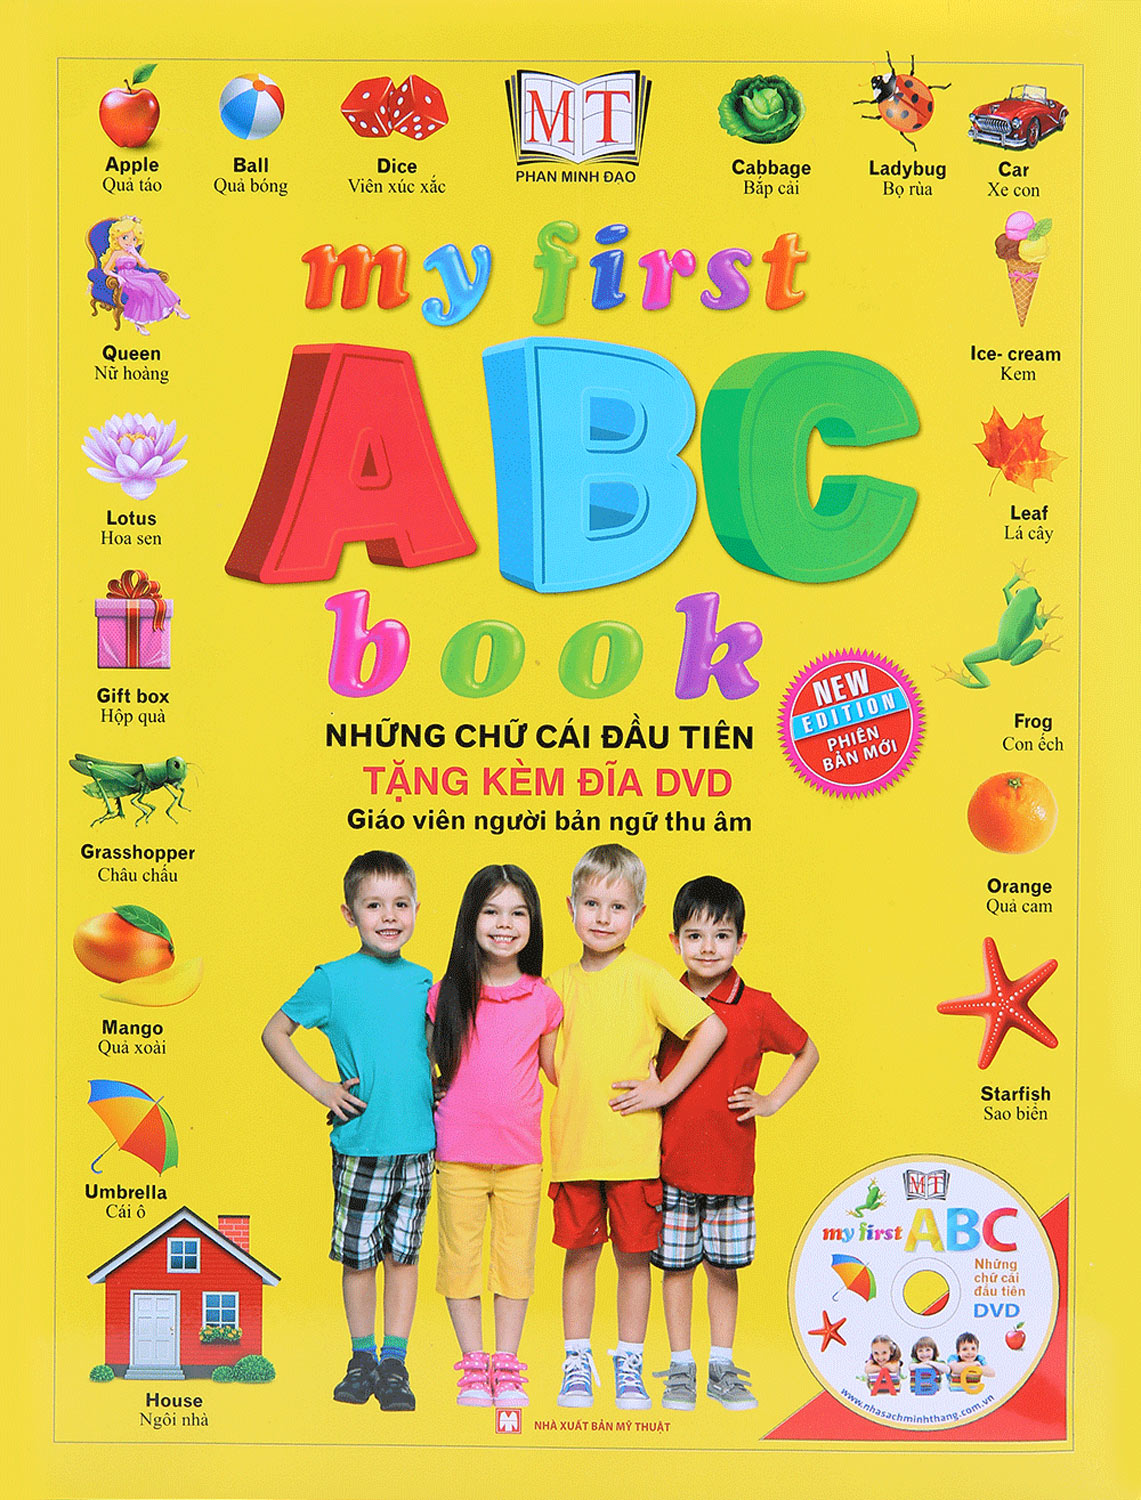 My First ABC Book – Những Chữ Cái Đầu Tiên